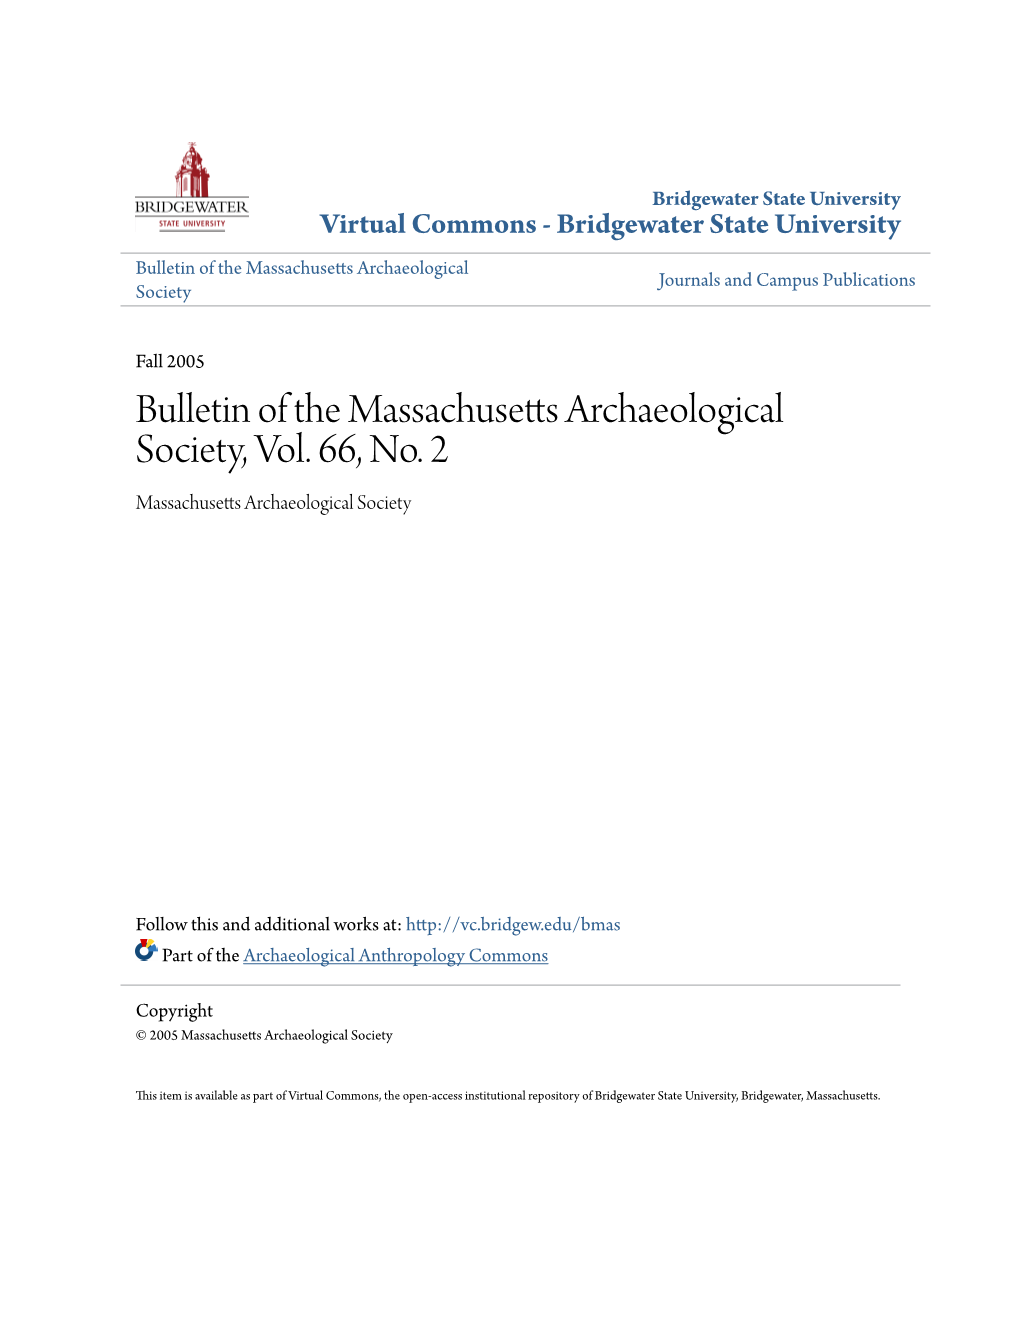 Bulletin of the Massachusetts Archaeological Society, Vol. 66, No. 2 Massachusetts Archaeological Society